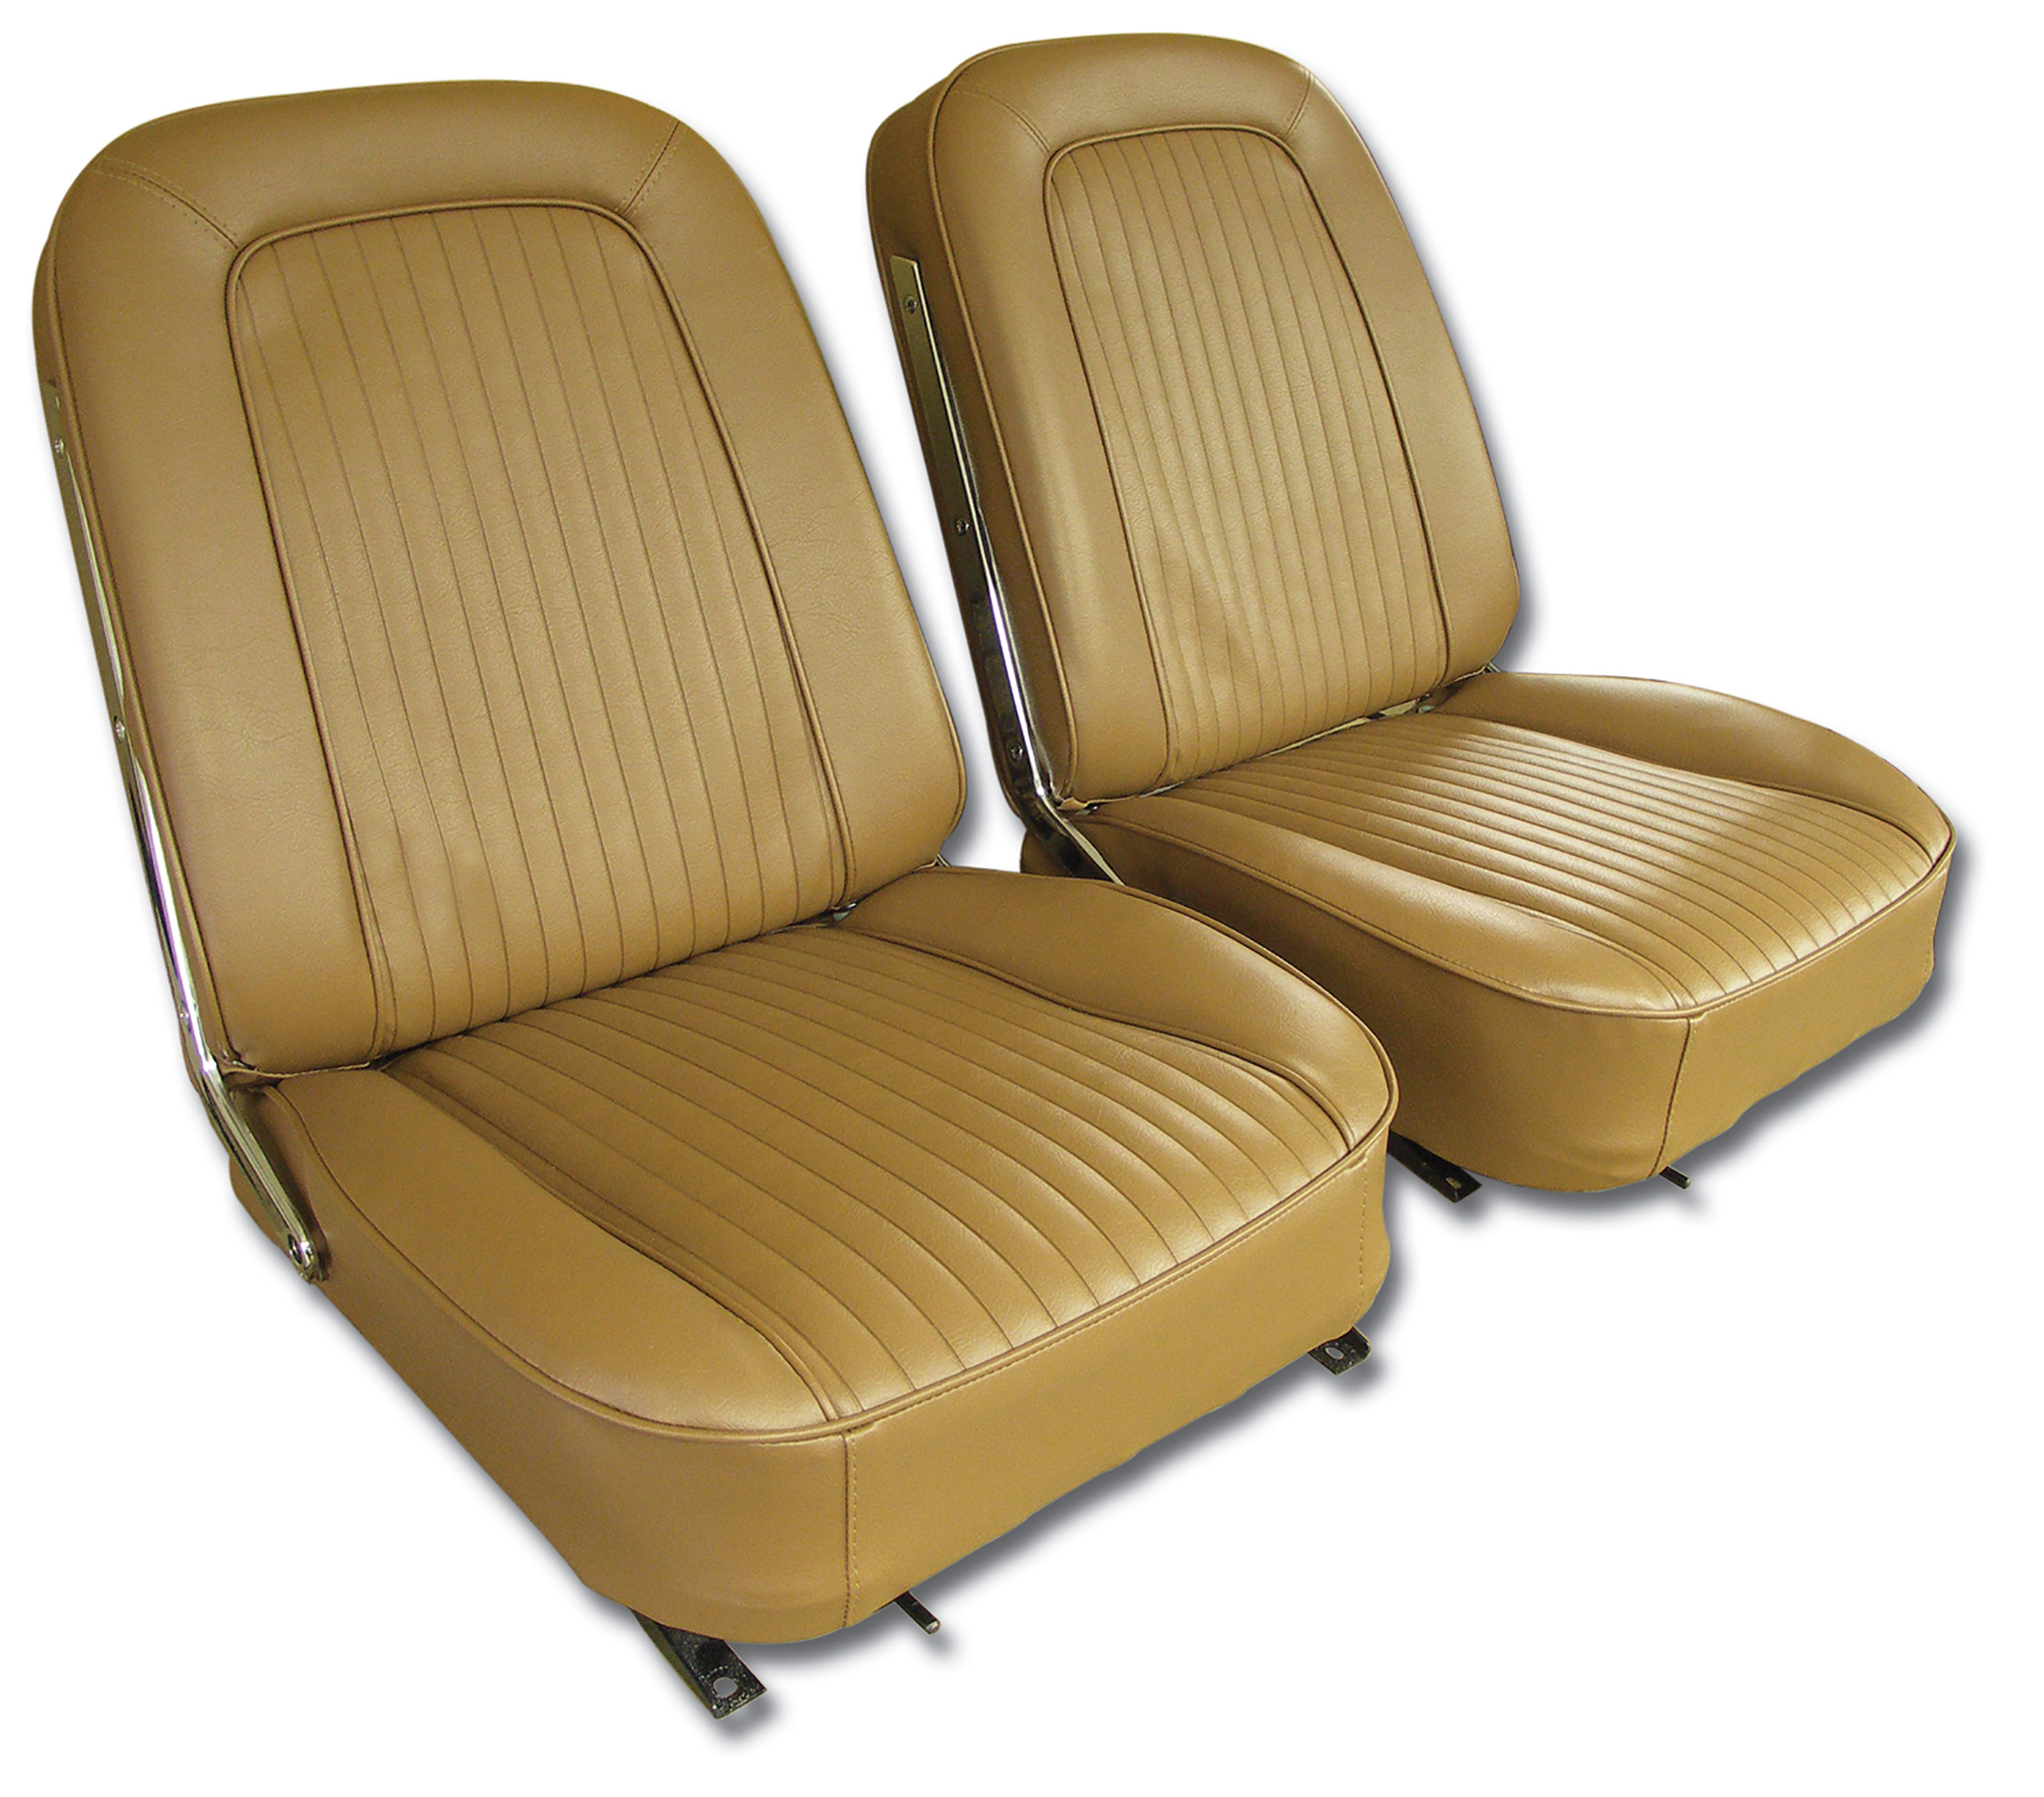 1964 Corvette C2 Vinyl Seat Covers- Saddle CA-445554 